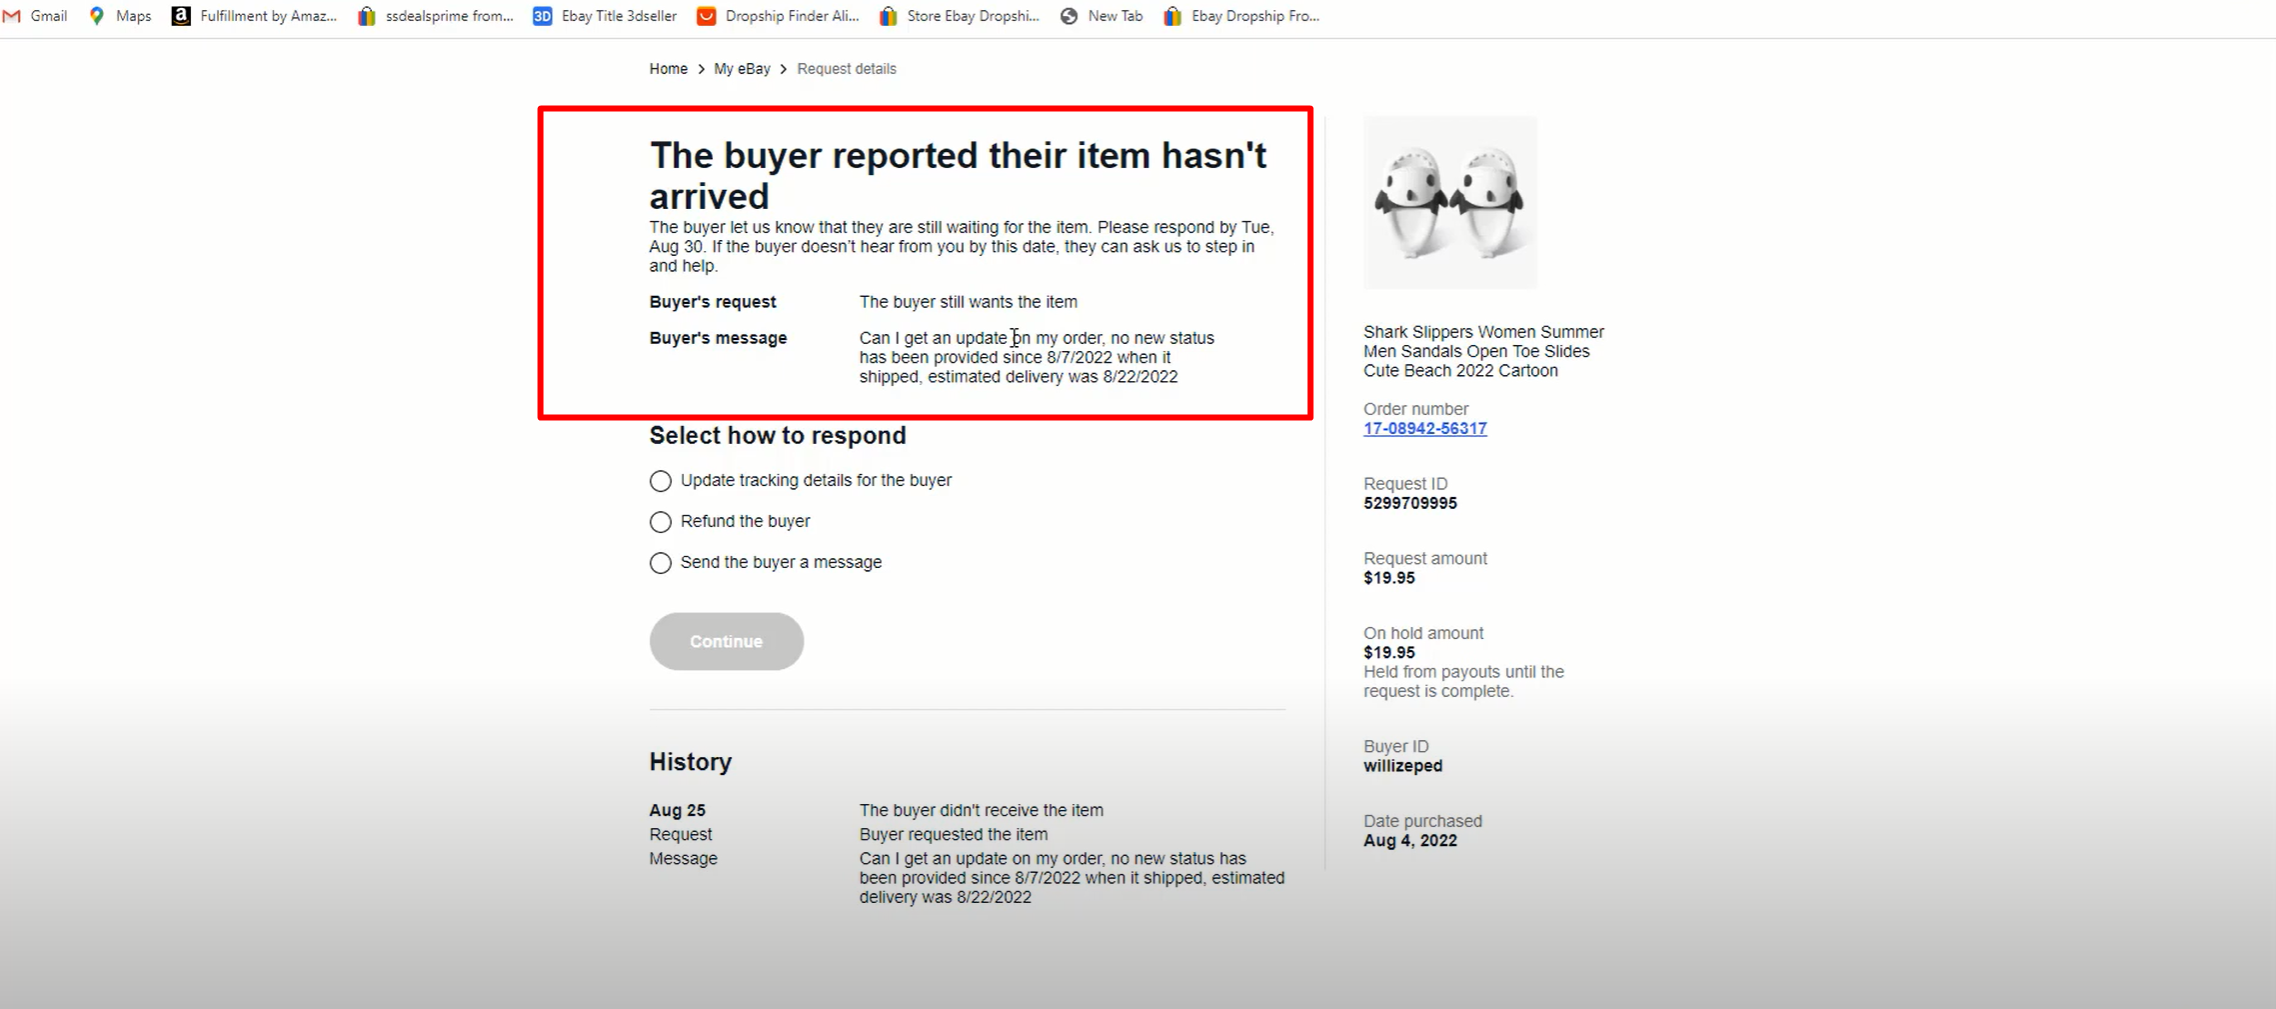 khách hàng gửi khiếu nại cho ebay về việc giao hàng chậm trễ